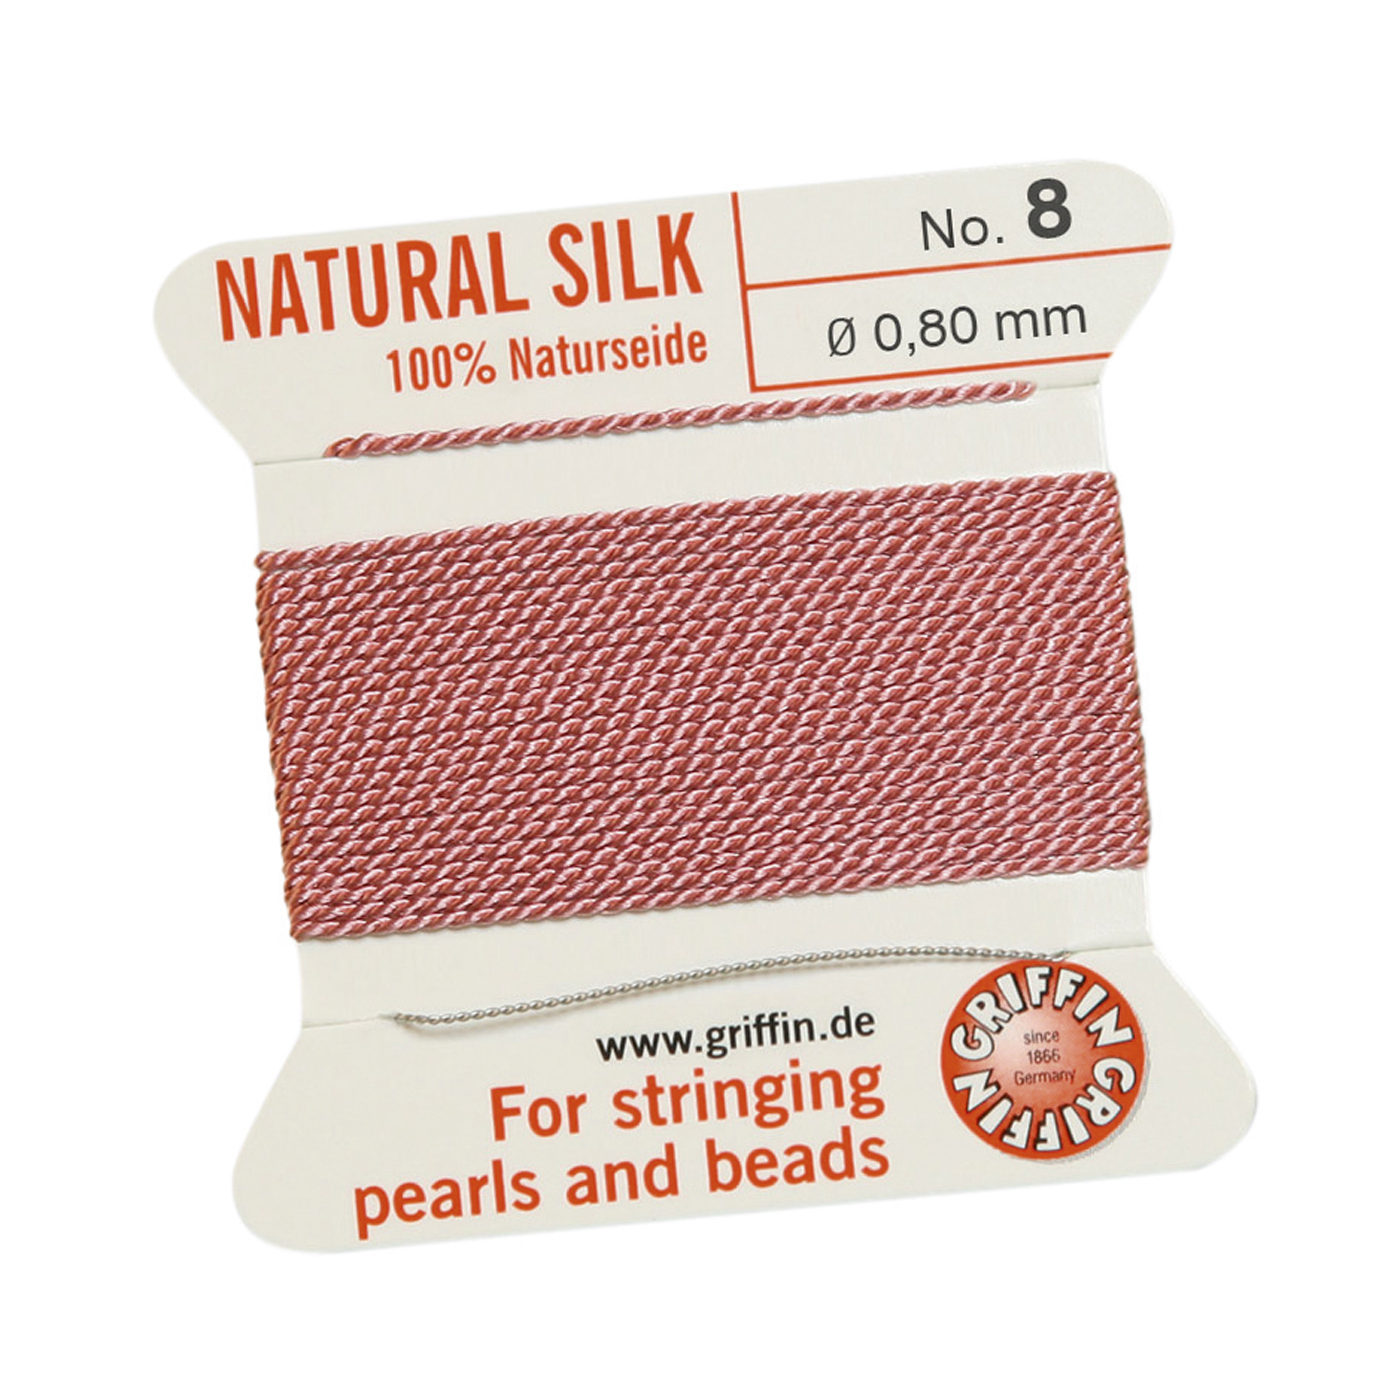 Bead Cord 100% Natural Silk, Dark Pink, No. 8 - 2 m